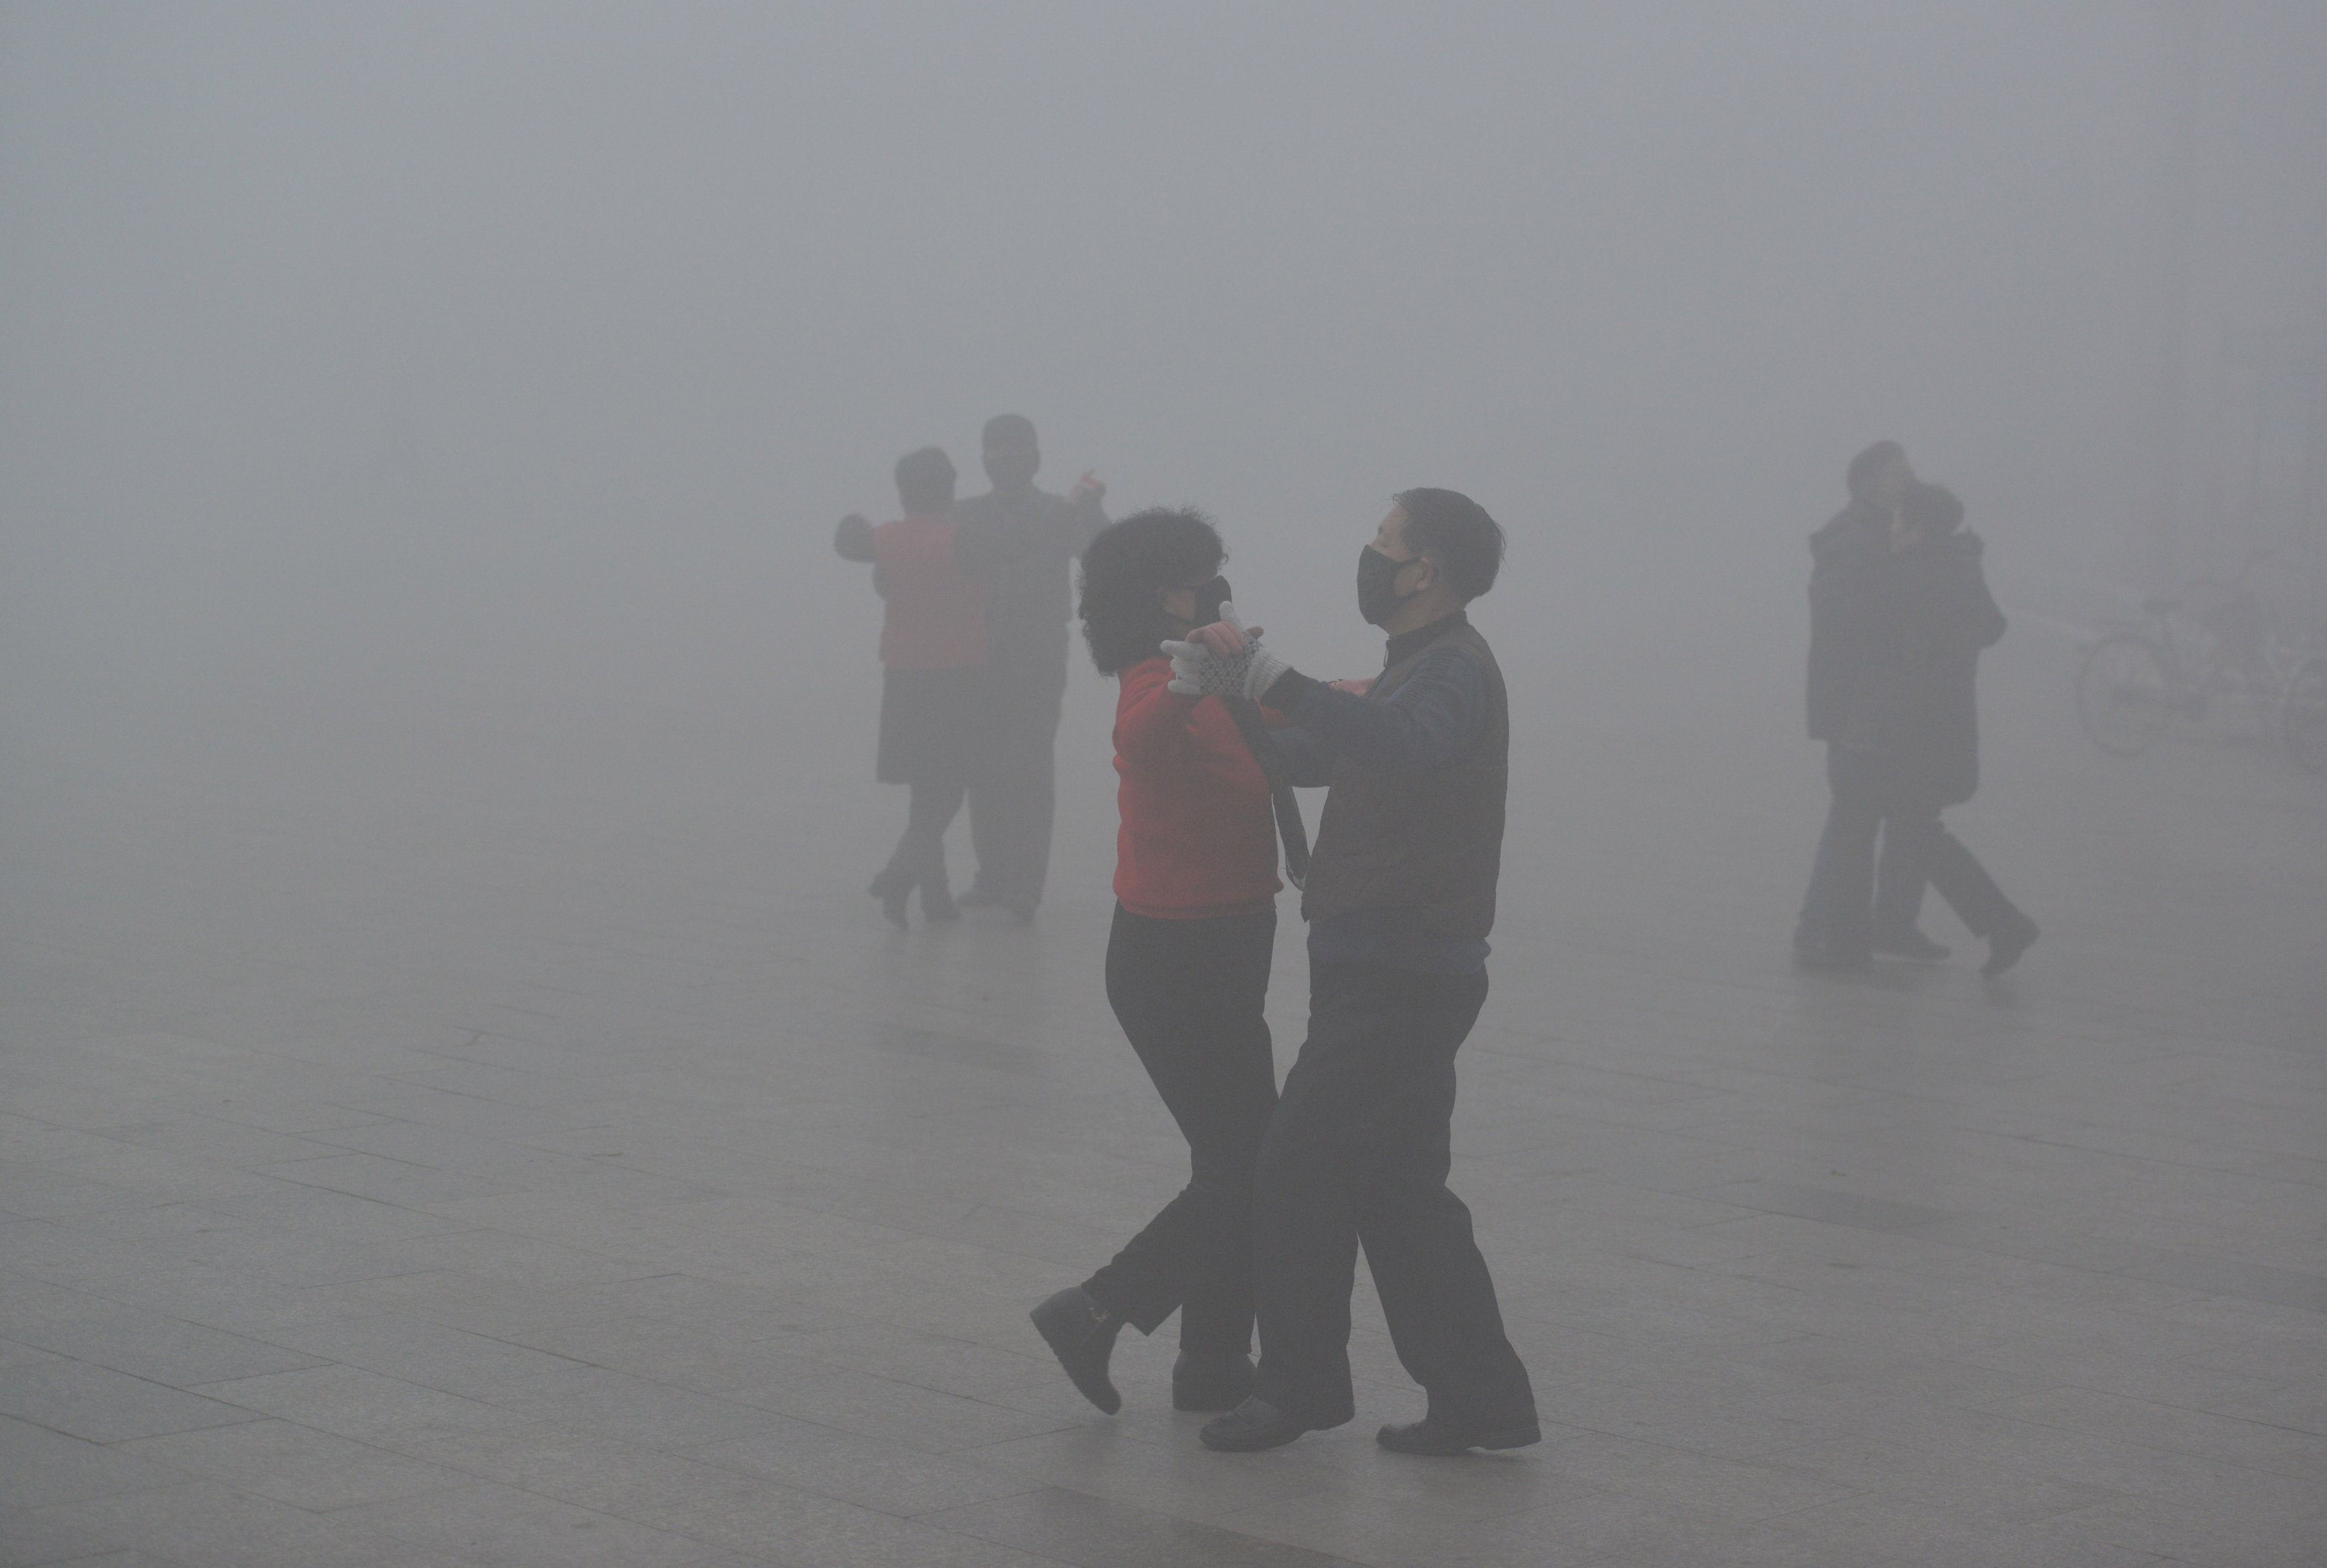 Σε «πορτοκαλί» συναγερμό παραμένει το Πεκίνο, λόγω ρύπανσης